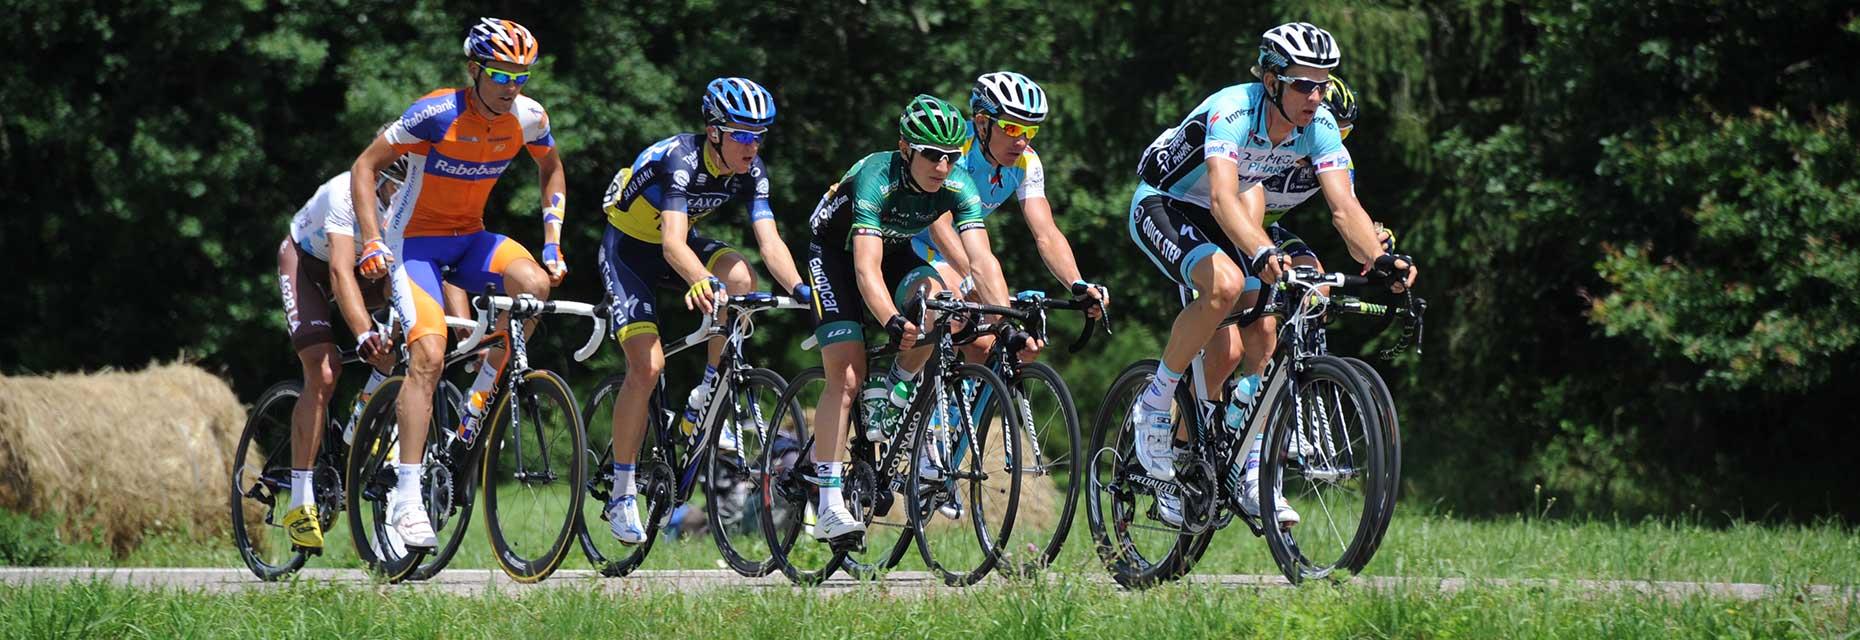 Tour de France wielerwedstrijd in Haute-Saône